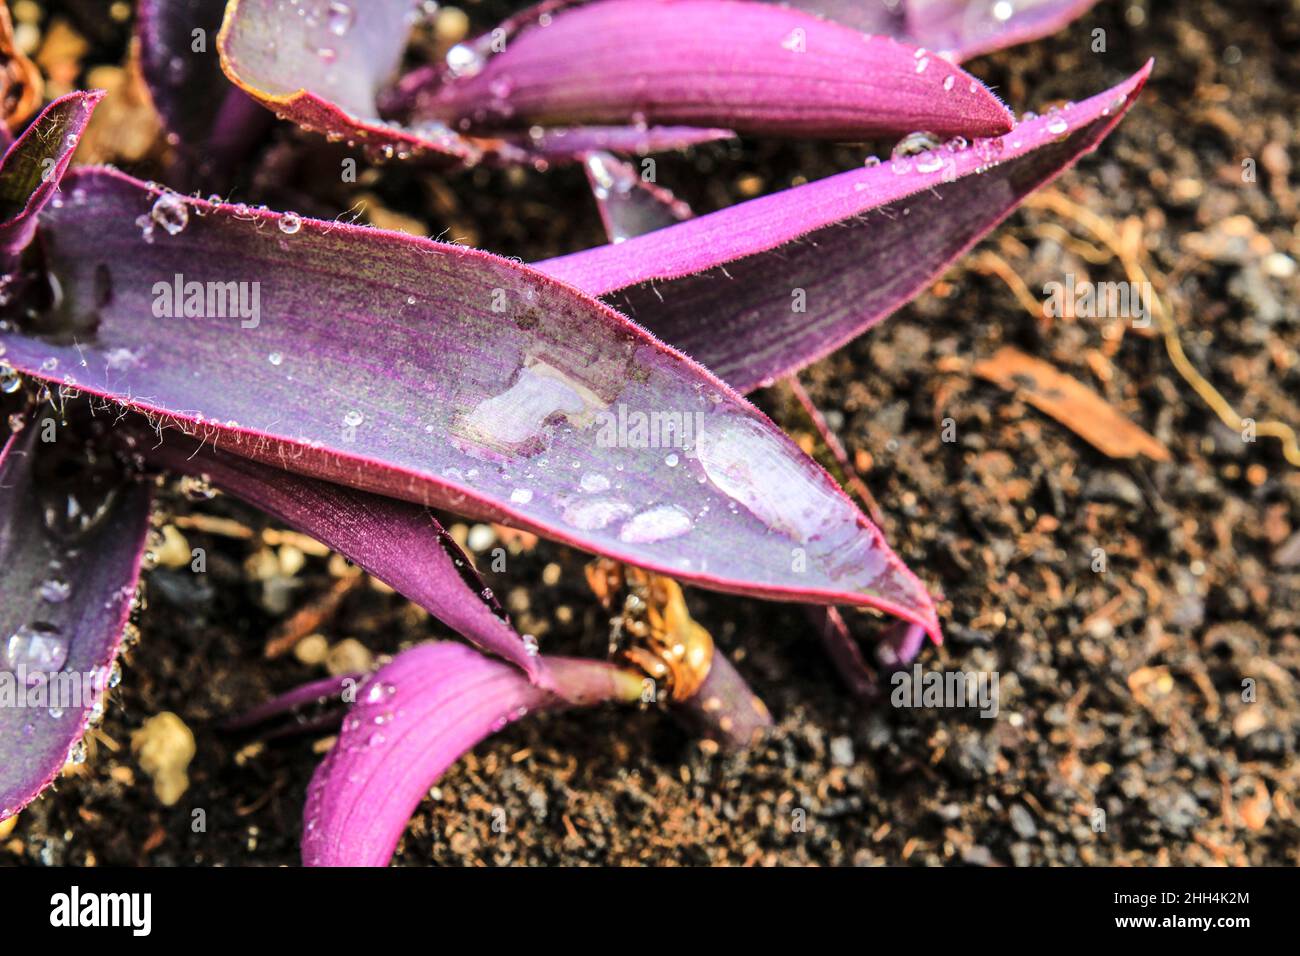 Tradescantia purpurea texture in the garden under the sun Stock Photo